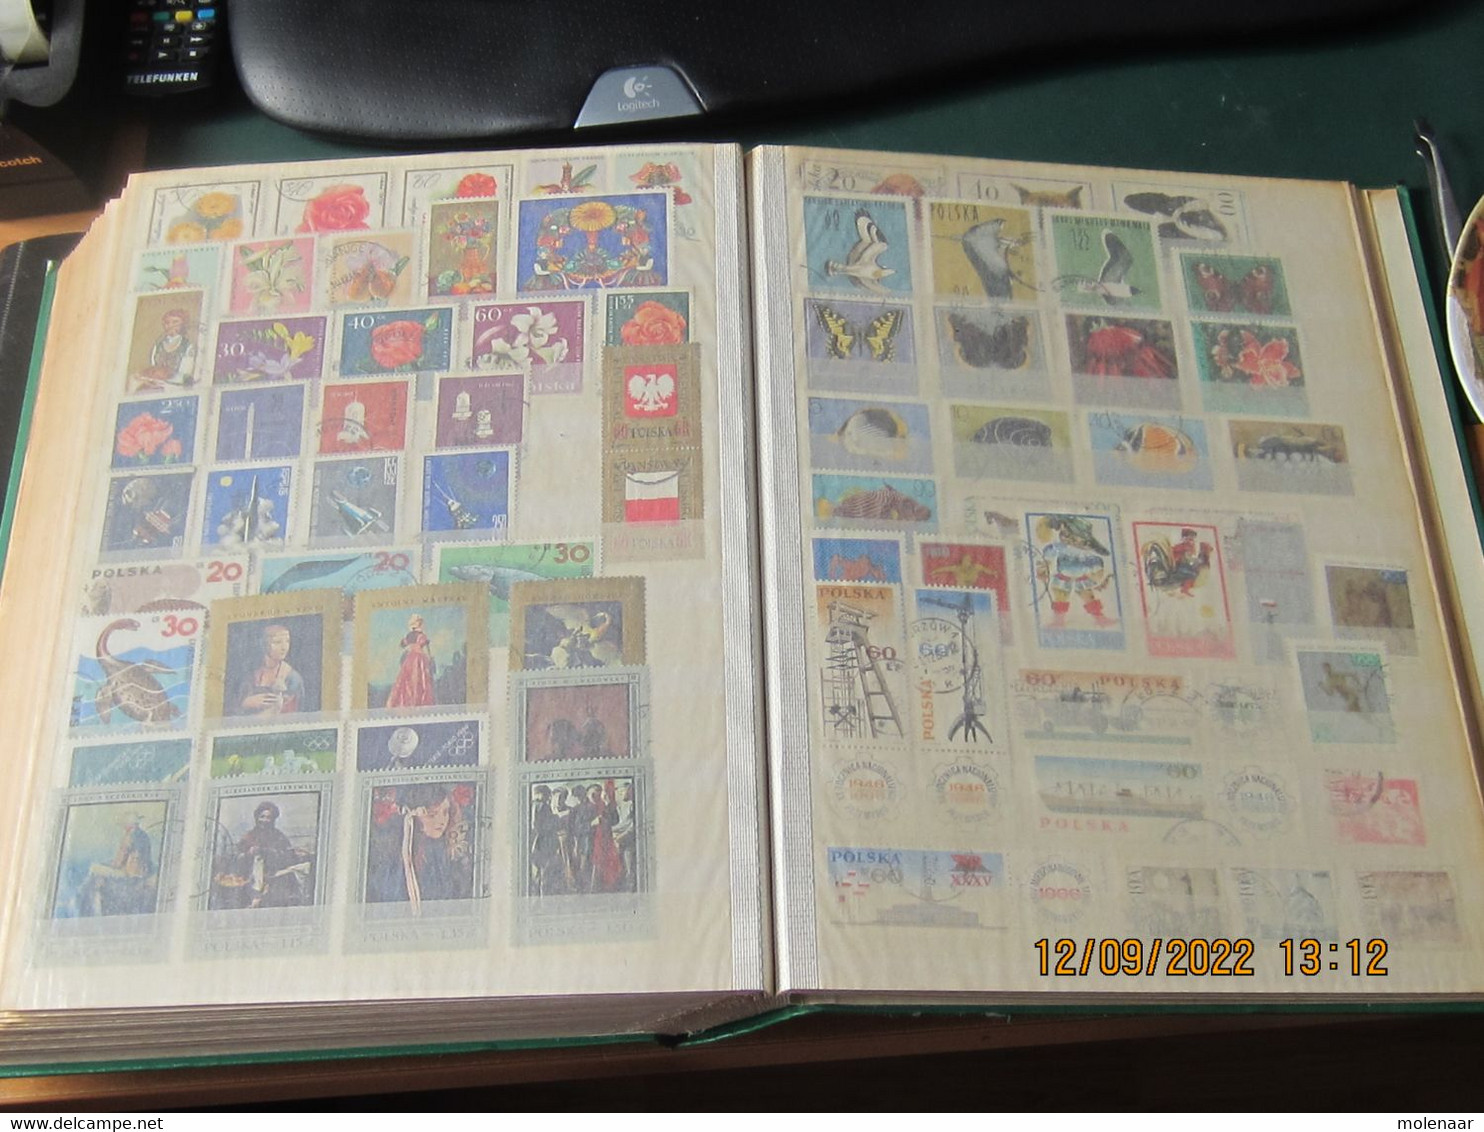 Polen 2 stockboeken met veel gebruikte postzegels veel complete series (8408)